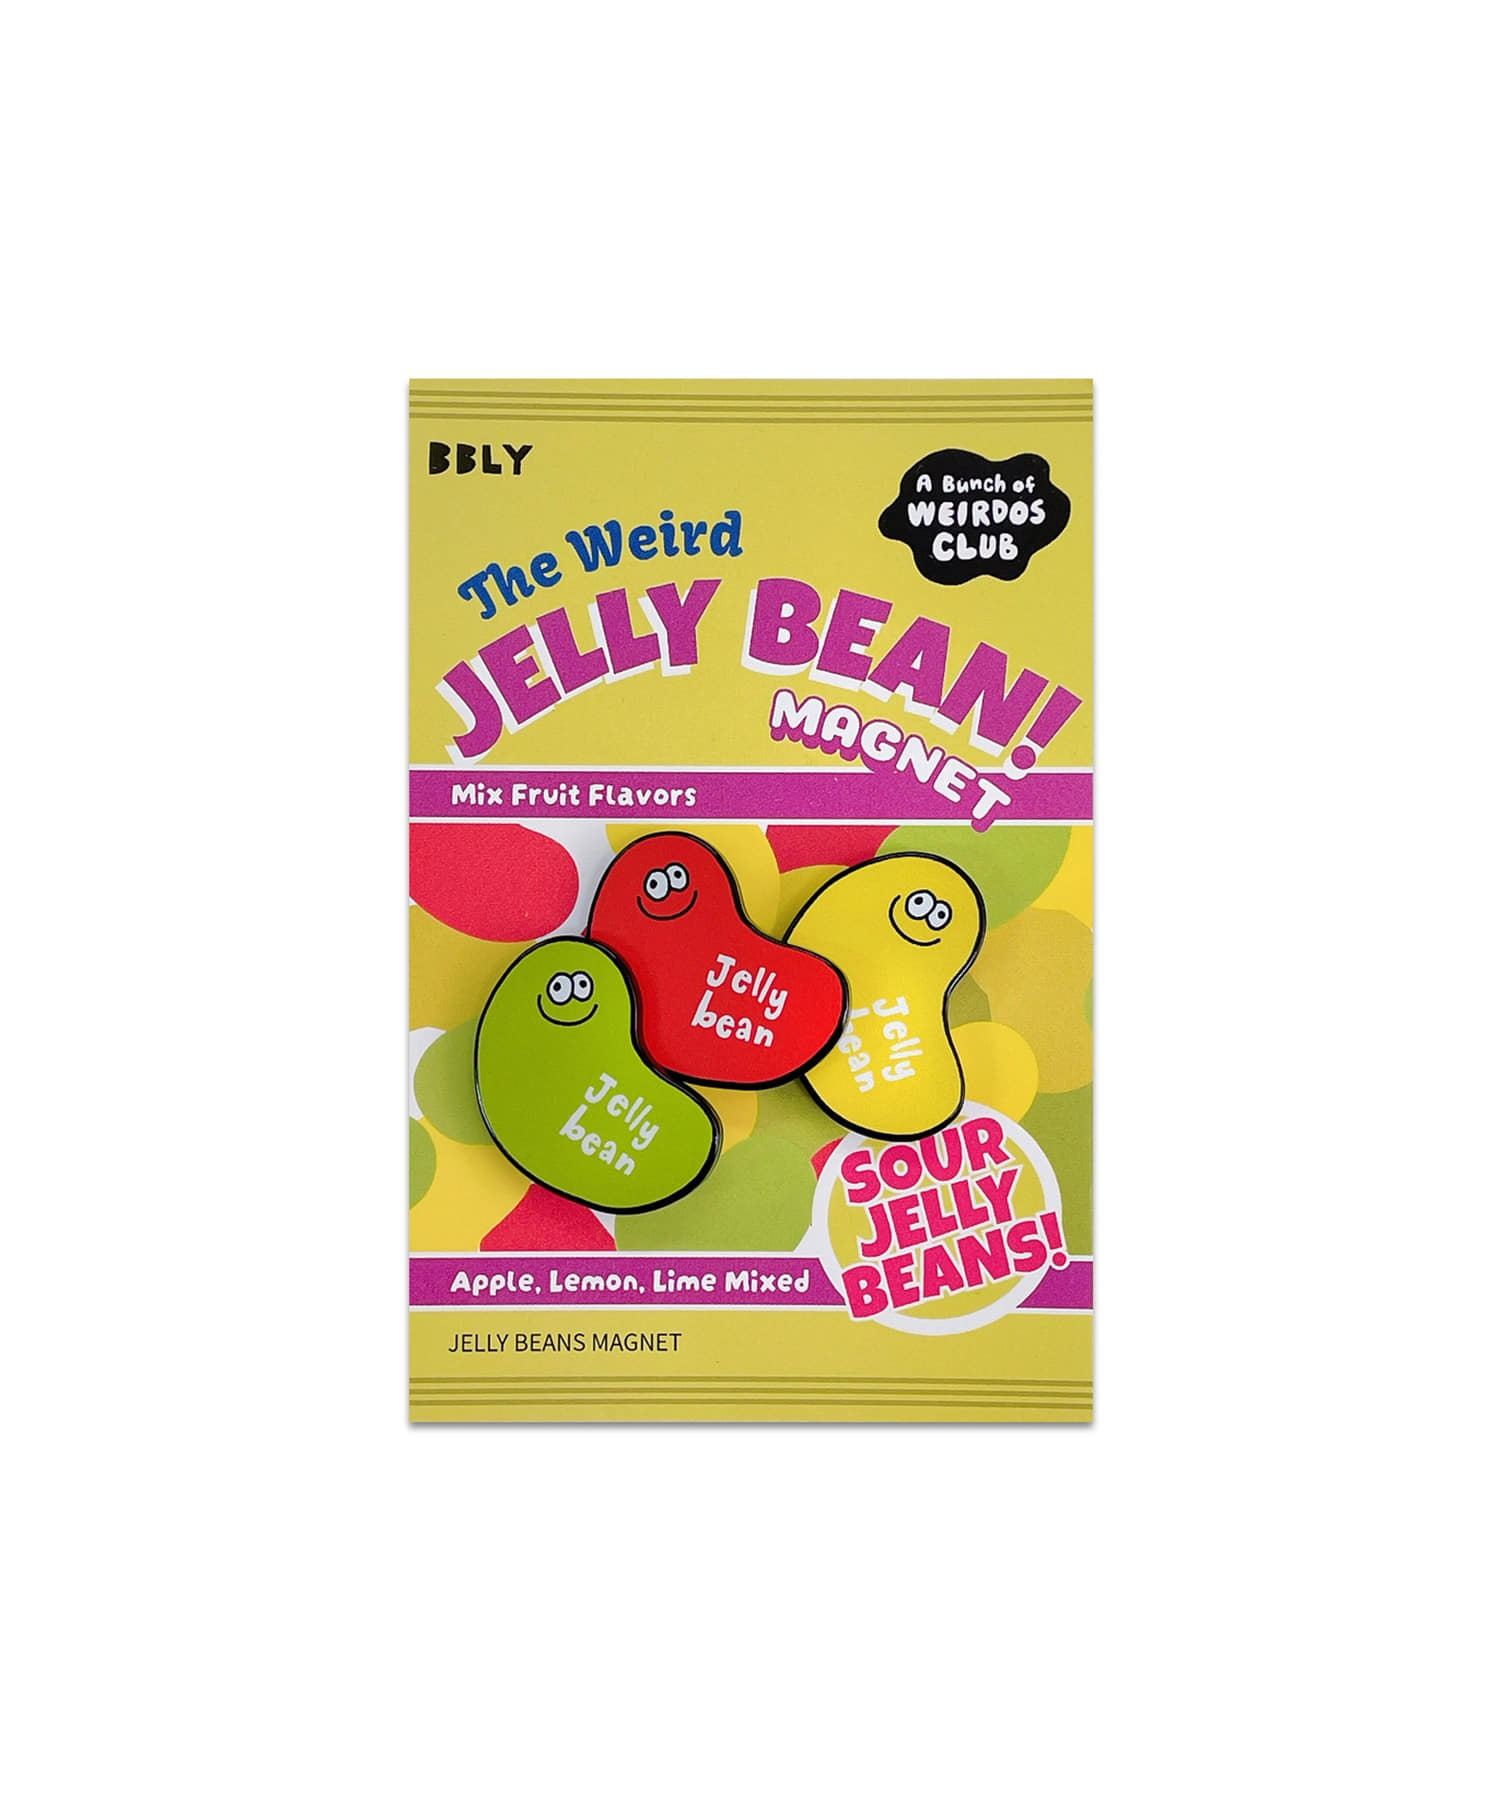 The Weird Jellybean 마그넷